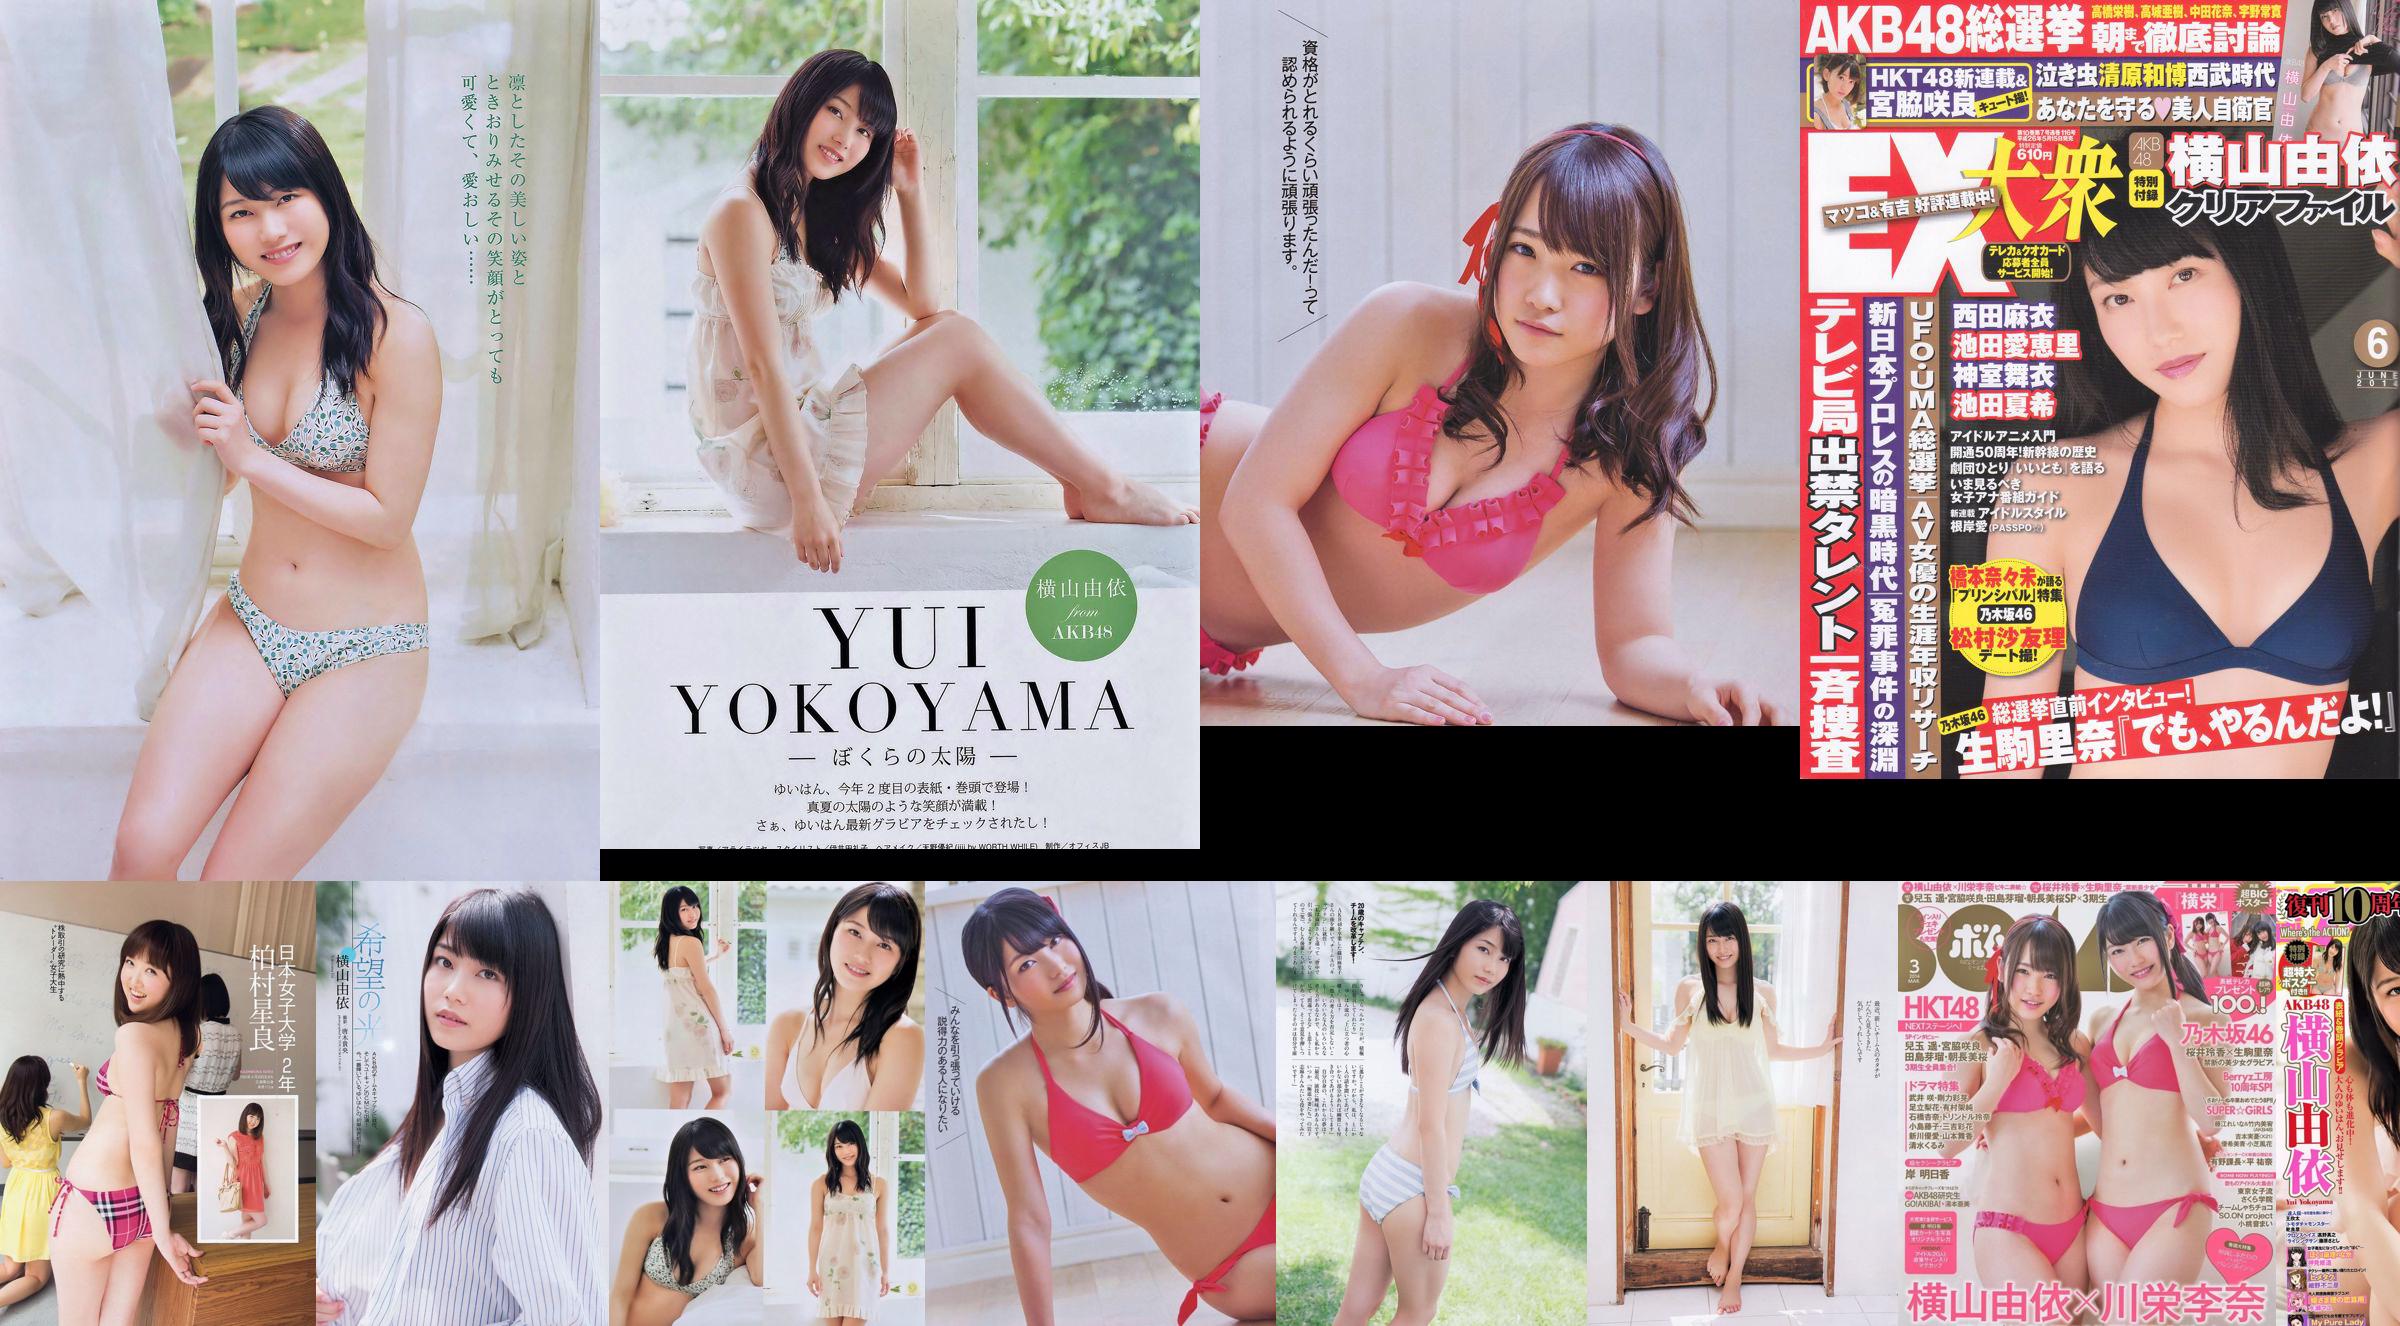 Momoiro Clover Z Yui Yokoyama Yua Shinkawa Mio Uema Anri Sugihara Kumi Yagami [Weekly Playboy] 2013 No.20 Photo Moshi No.1a5cfd Trang 7